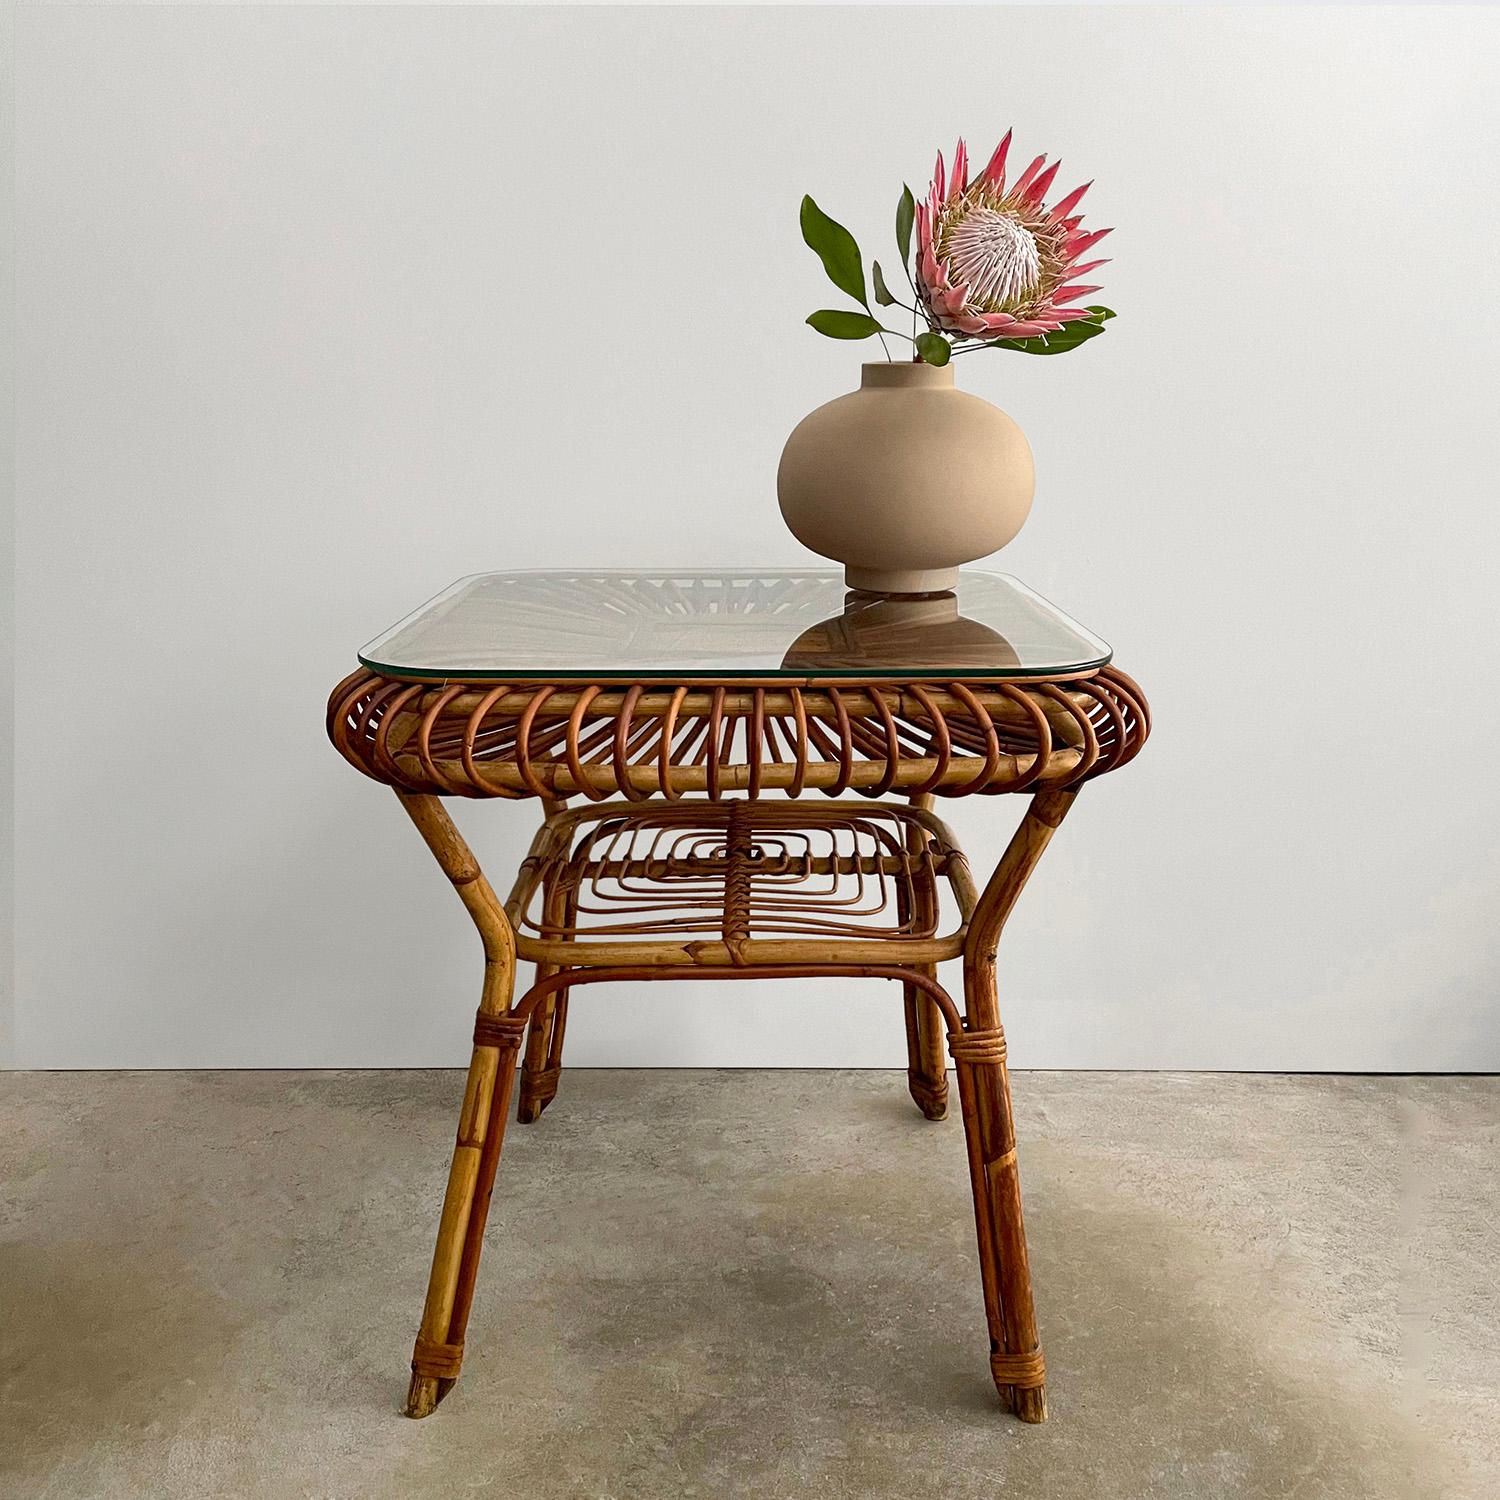 Table italienne en bambou et rotin
Italie, années 1960 
Magnifique pièce artisanale réalisée à la main avec un grand souci du détail
Des roseaux de rotin magnifiquement sculptés, rayonnant à partir de l'axe central, entourent le cadre en bambou